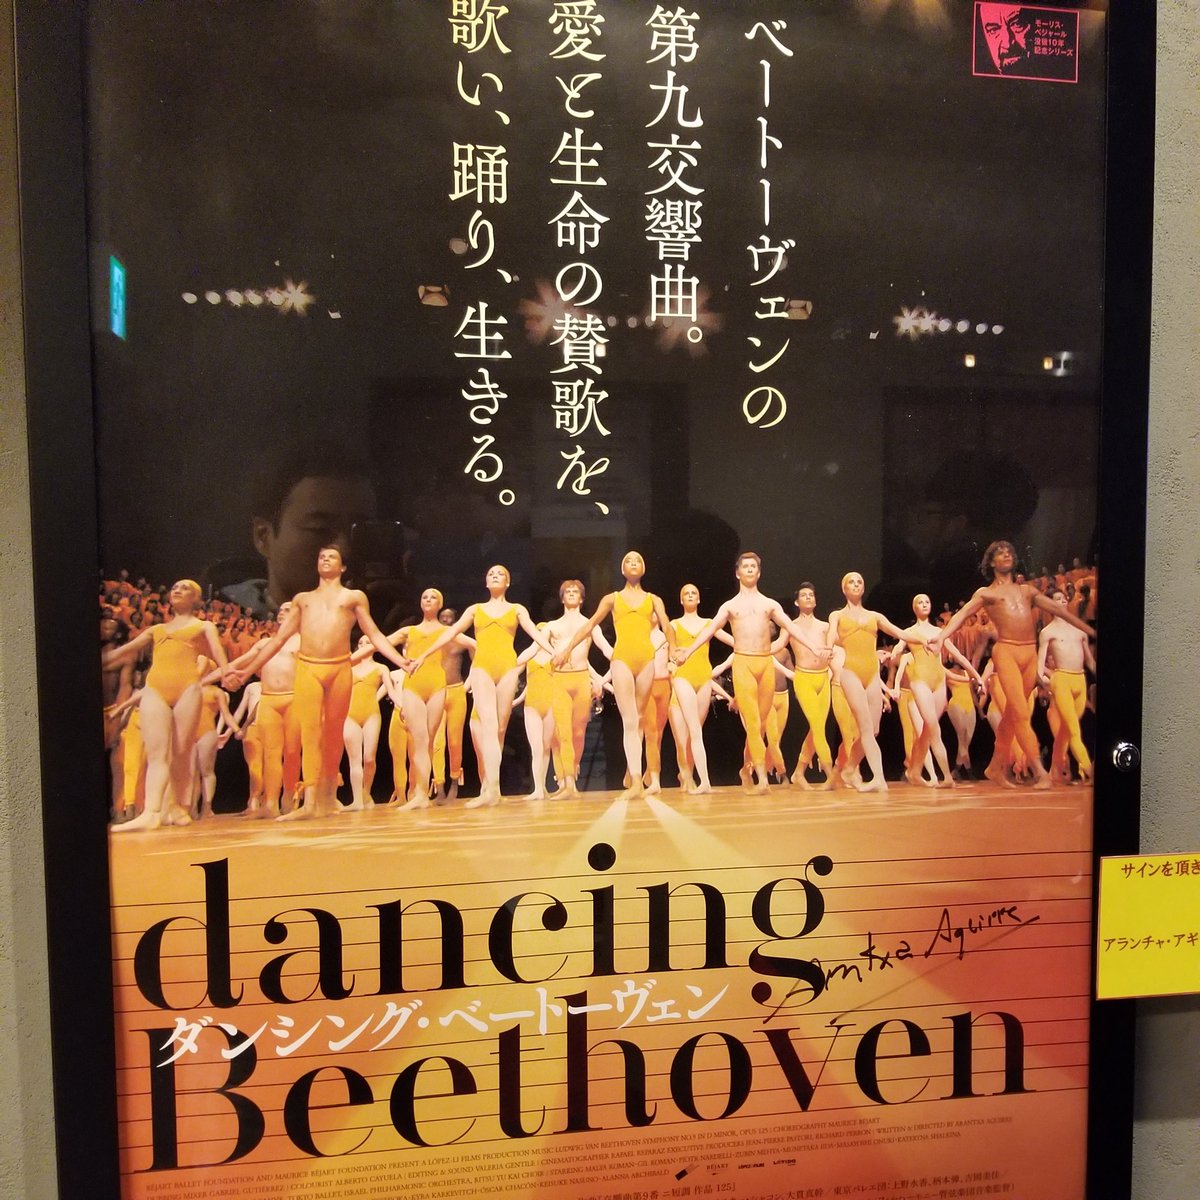 まさし 小僧 ダンシング ベートーヴェン ベートーヴェンの第９に乗せて 踊るバレー楽団のドキュメンタリー 東京バレー楽団も参加していて 舞台が東京に移るとは想像もしてなかったぜ 耳の聞こえなかったベートーヴェンに音楽を見せるって良い